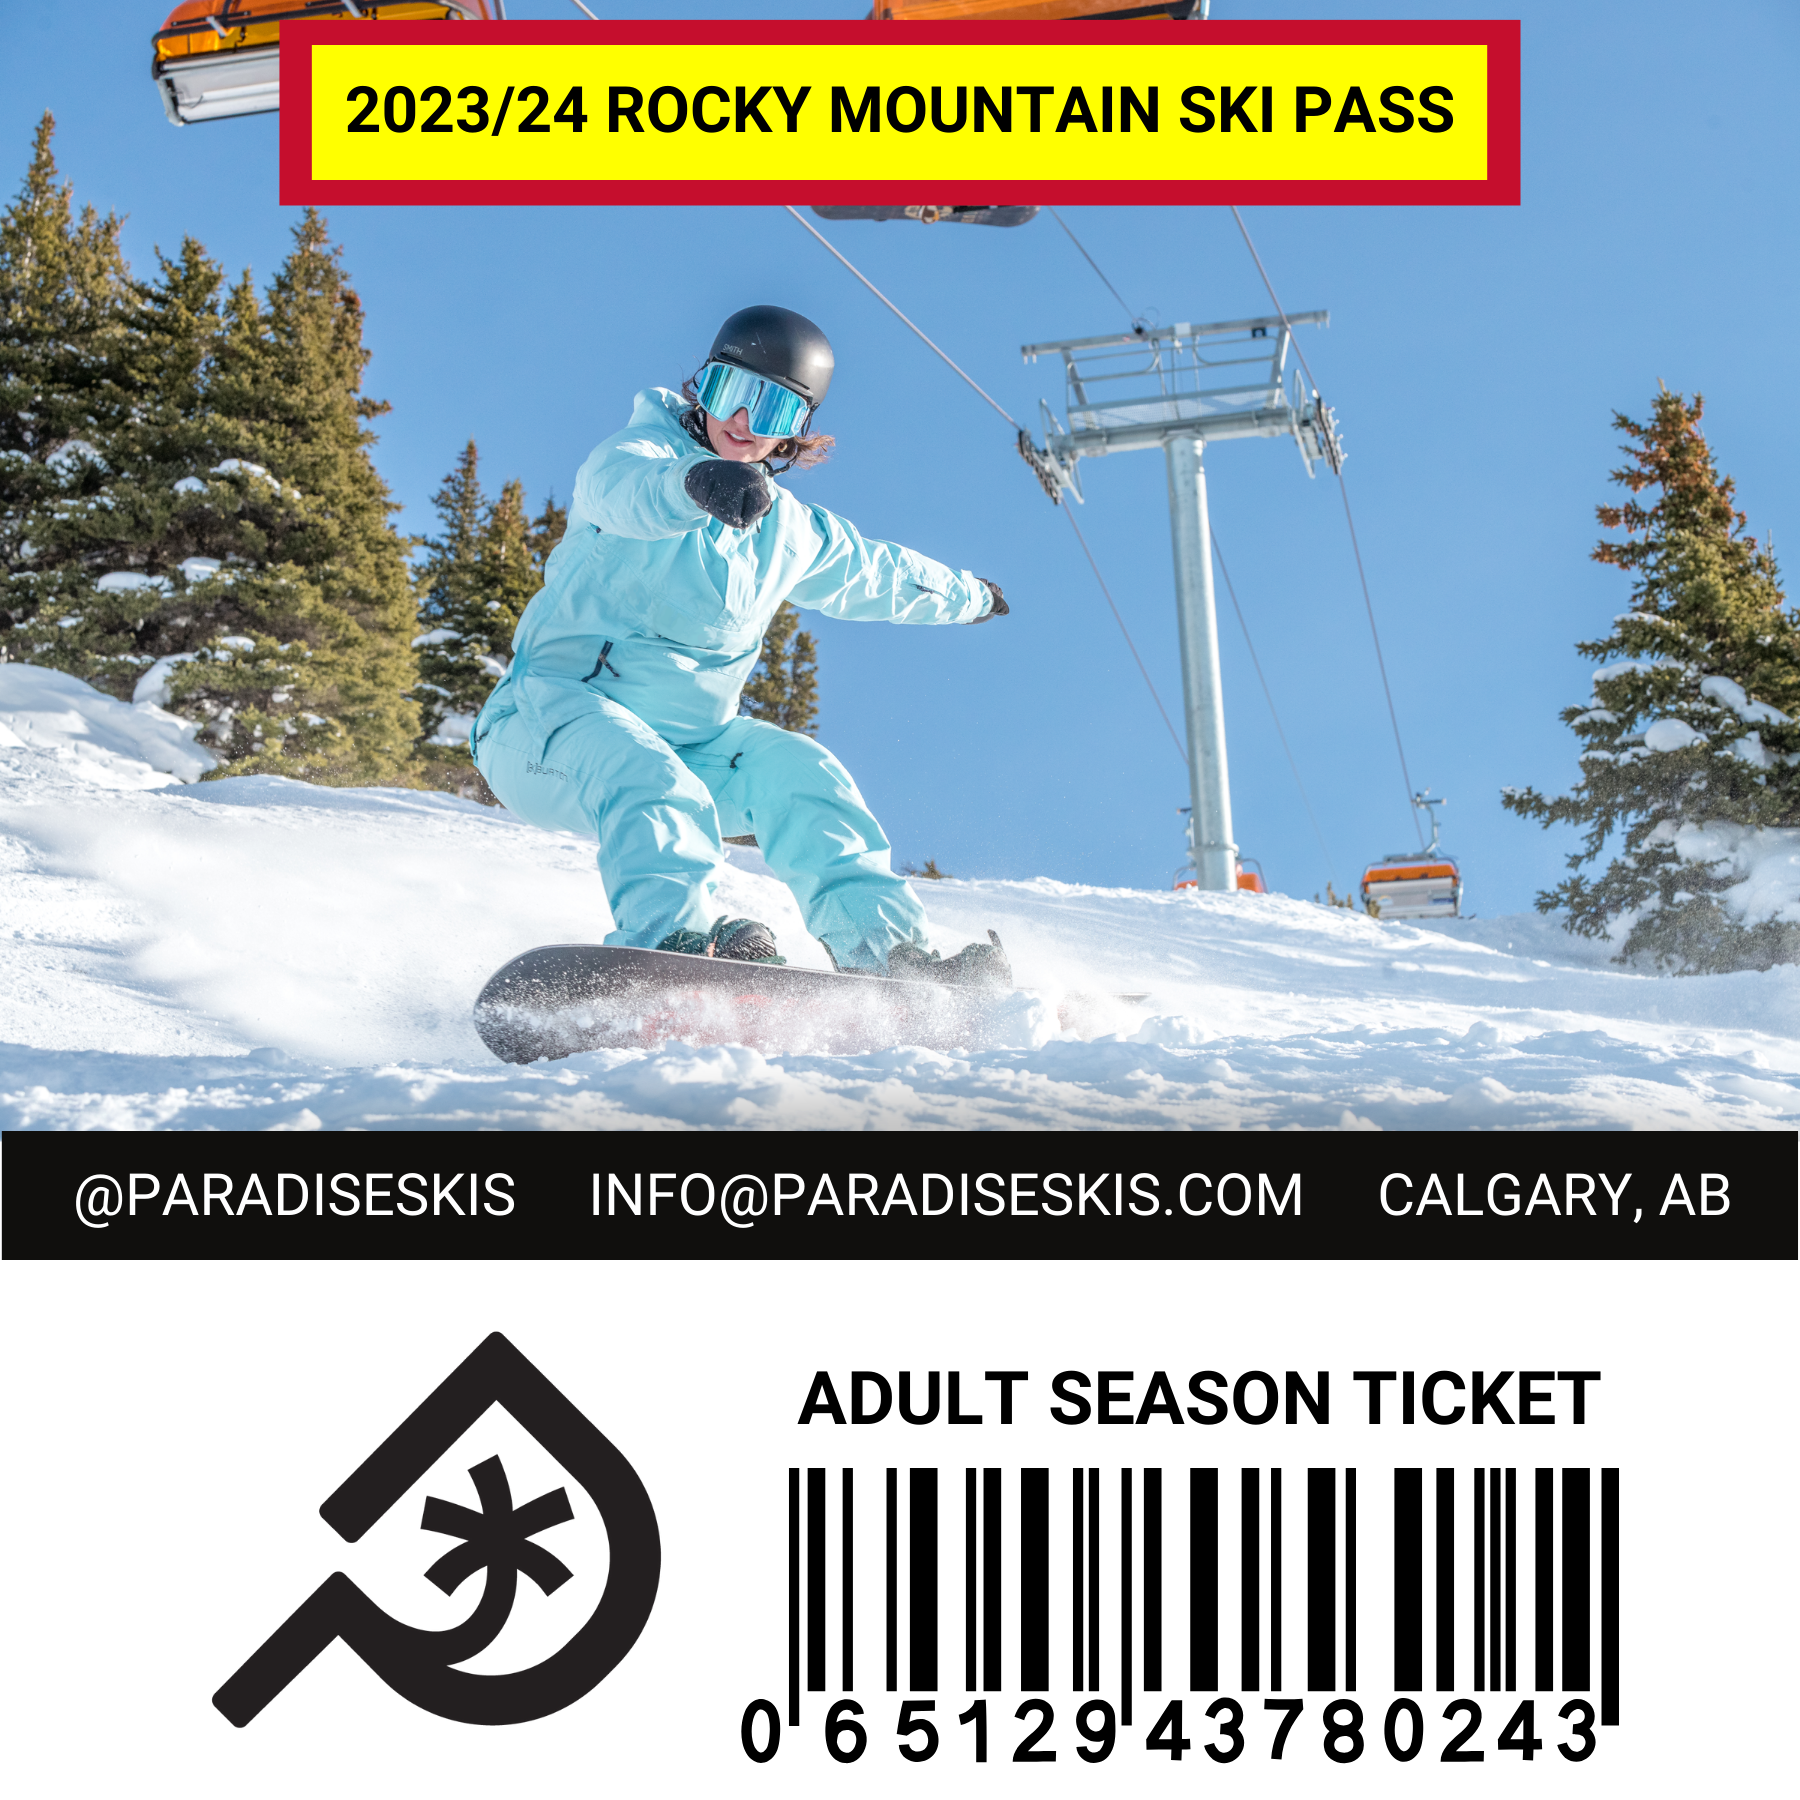 The Paradise 2023/24 Multi-Mountain Pass Breakdown